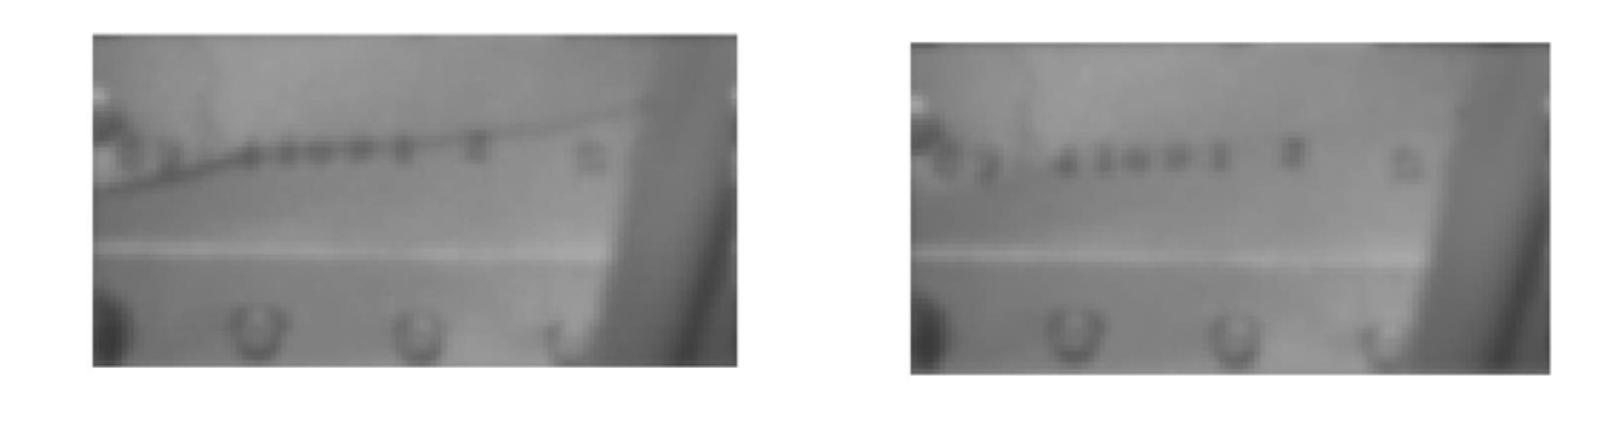 Näöntarkkuuteen vaikuttavia tekijöitä ovat: Verkkokalvon valoa aistivien solujen jakauma verkkokalvolla Silmän optiset kuvausvirheet Pupillin koko Näköratojen toiminnan laatu Verkkokalvokuvan